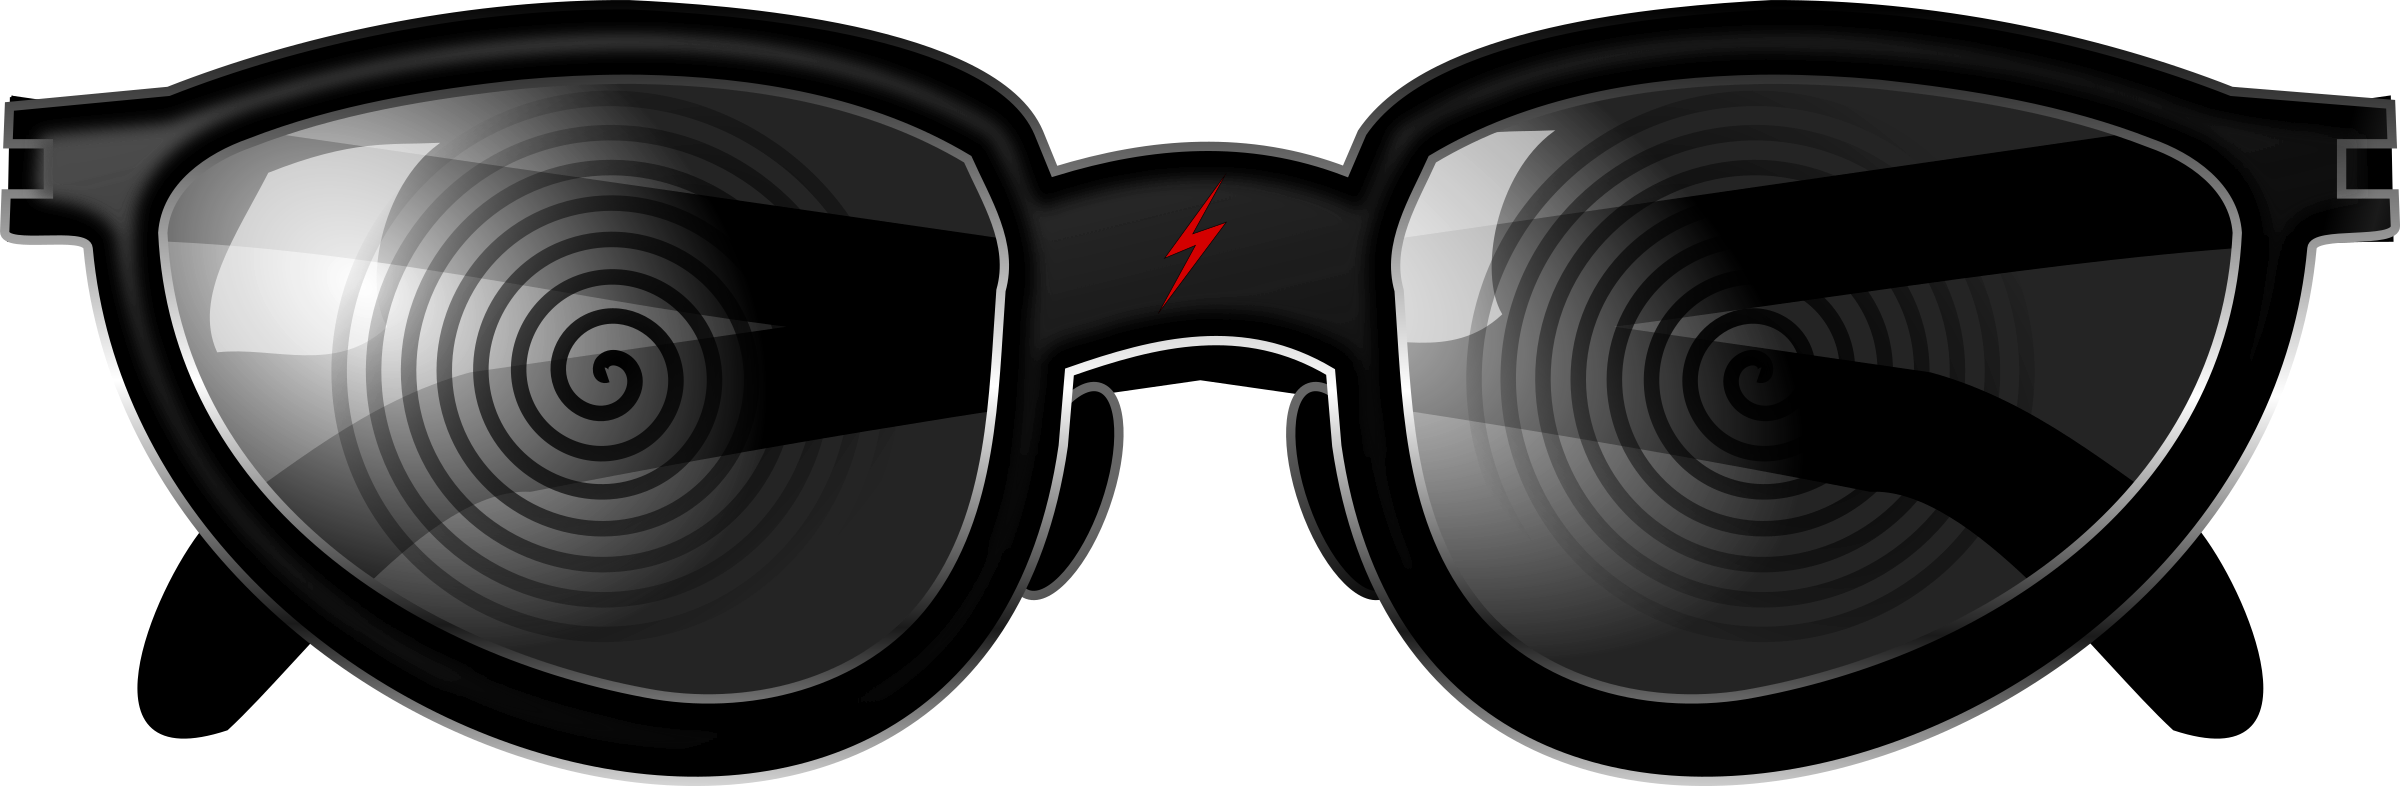 X-Ray Spex Specs Glasses Clip arts